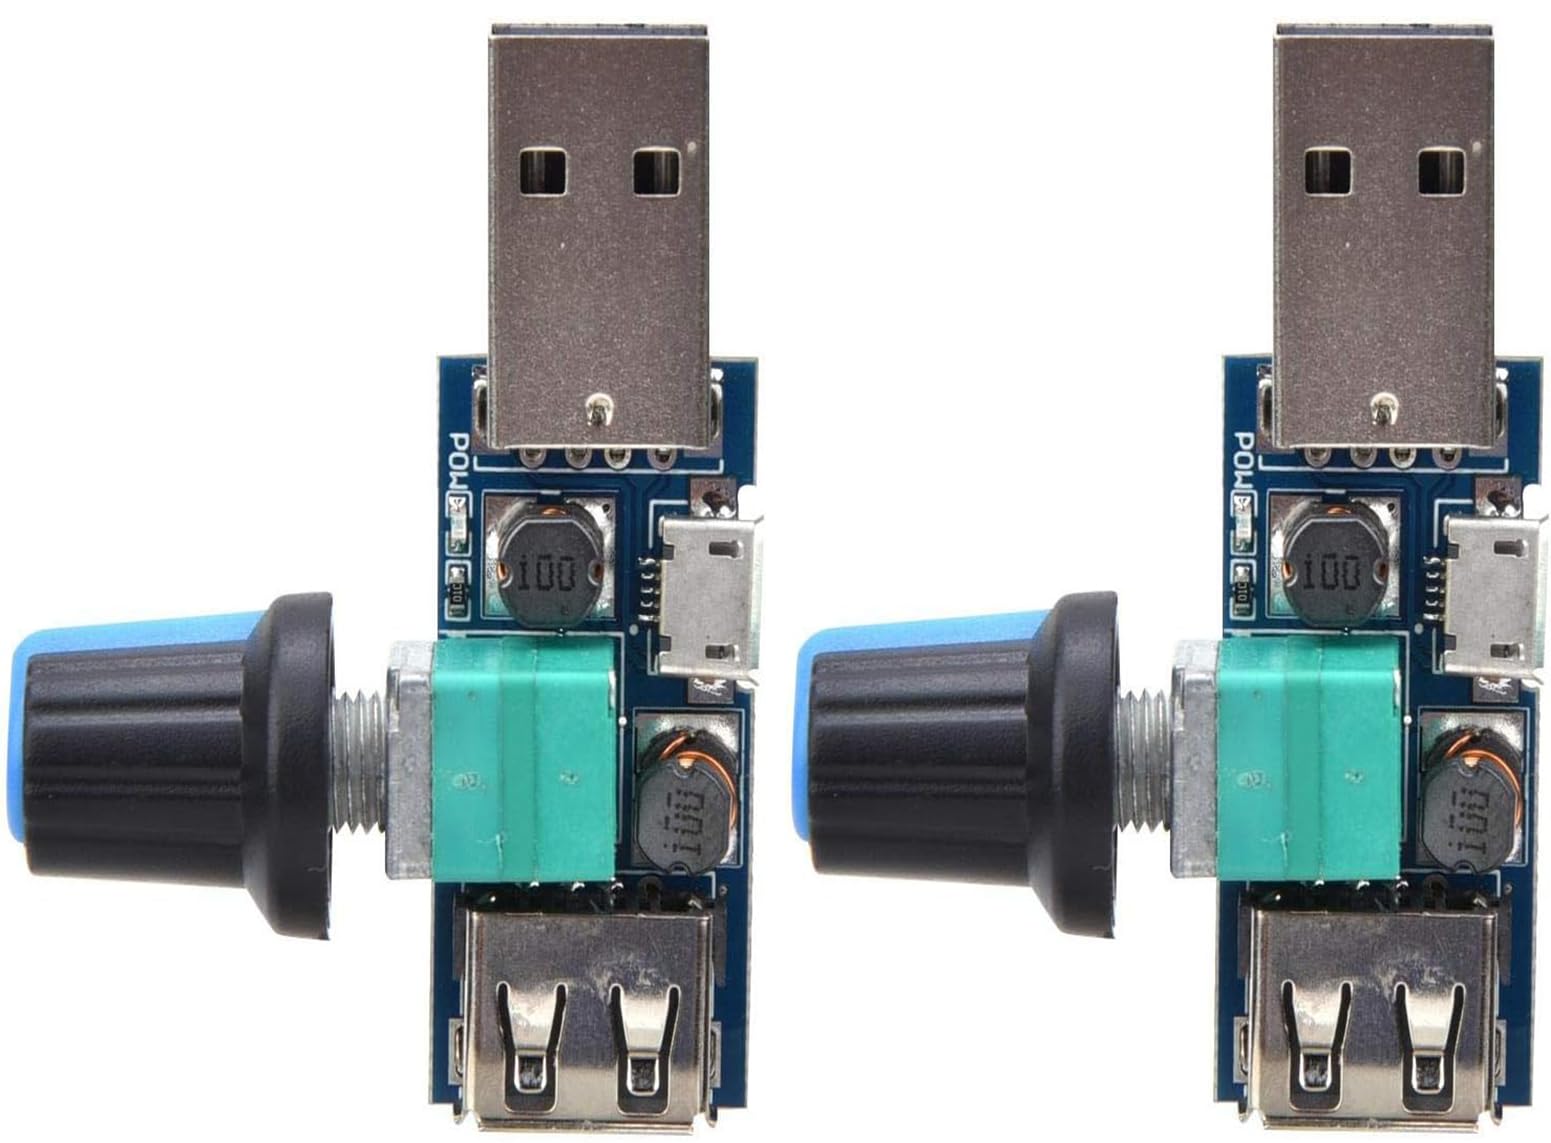 商品情報商品の説明説明 USB速度コントローラ スピードコントローラ パワーコントローラ スピードレギュレーター スピードコントローラスイッチ 変速スイッチモジュール ミニ回転制御ポテンショメータ DCモーター ミニモータ 速度コントローラー 制御モジュール 無段階調節 無段階 USB扇風機風量 スイッチ調整可能 LED調光 LEDインジケータ付き ボリューム 2個入り主な仕様 【仕様と動作環境】仕様：サイズ：3.6cm×5cm/1.41×1.96インチ。動作環境：電源範囲：DC 4V〜12V、出力範囲：DC 2.5V〜8V、定格電力：5W（過負荷使用しないでください）br【風は自由に調整でき】無段階速度レギュレータの出力電圧範囲は2.5V〜8Vの間でスムーズに変化するため、オフィス、寮、ベッドサイドなどに適しています。ノブを時計回りに回すと、風量が増加し、反時計回りに回すと風量が減少になり、ツマミにON/OFFスイッチ機能が付いています。ファンの風速を調整でき、快適さが大幅に向上します。br【多機能】このUSBスピードコントローラはLEDランプ照度、ファン風速を調整、快適さが大幅に改善できます。本機をランプや電化製品と直列に接続し、つまみを回して調光、調速、電圧、温度をコントロールします。br【安定した性能】：こ人気あるの電子モジュールにする耐久性、安定性、静音性、低発熱性などエレガントな外観と安定した性能を備えています。br【使用簡単】：USBファンコントローラーはとても使いやすいです。スマホのの充電器、パワーバンク、コンピュータのUSBなどに接続し、ファンのUSBプラグをガバナーのUSBポートに挿入してから、調整ノブを回して、大小風量を調整します。ファンを2段階で調整する場合は、ファンを1つのギアに入れてください。そうしないと、速度を調整できない場合があります。